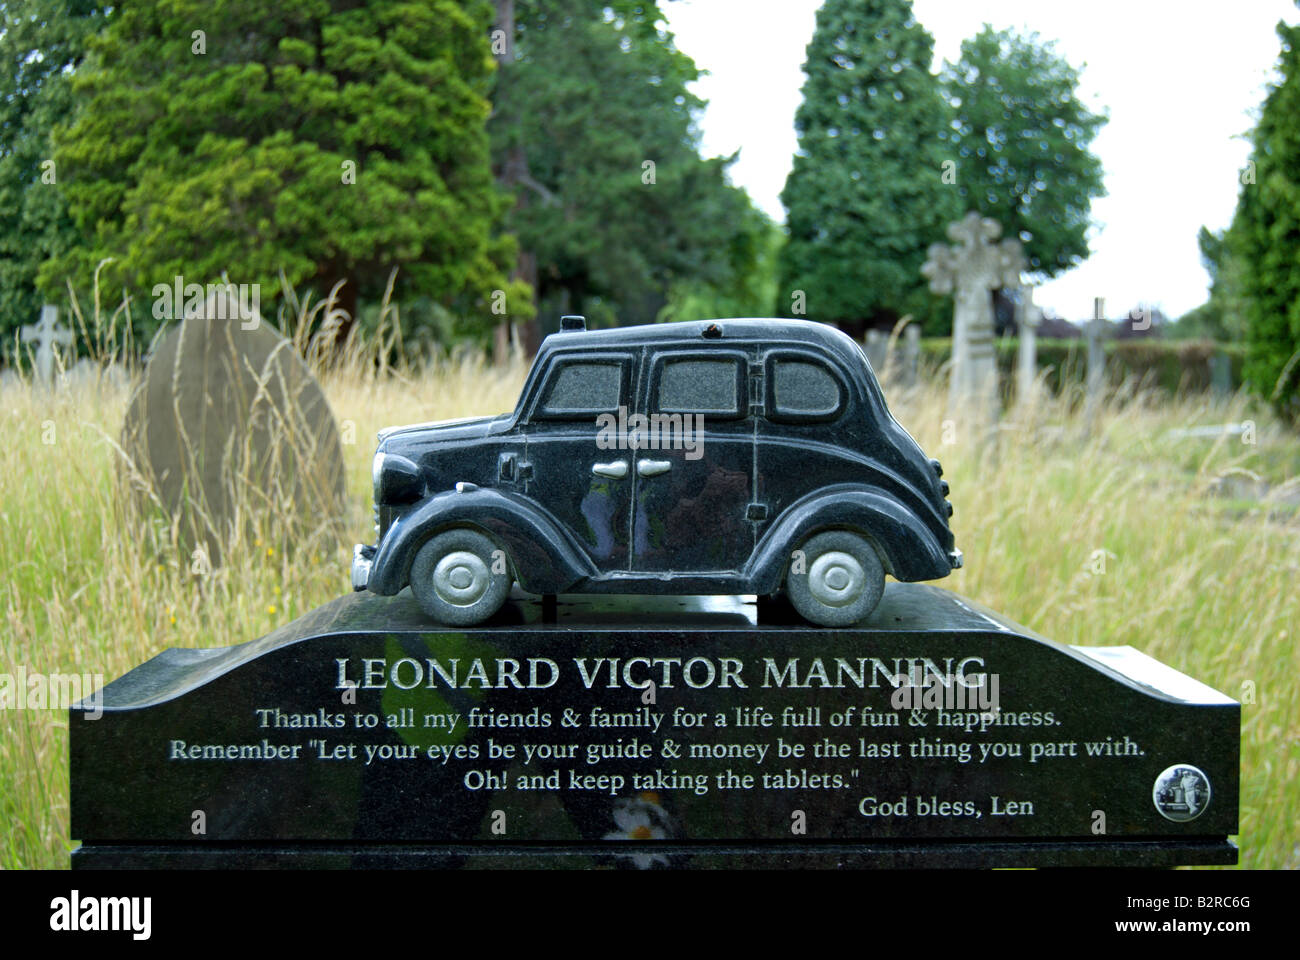 Détail de la pierre tombale de la tombe de leonard victor Manning, un ancien chauffeur de taxi, dans le cimetière de Richmond, Surrey, Angleterre Banque D'Images